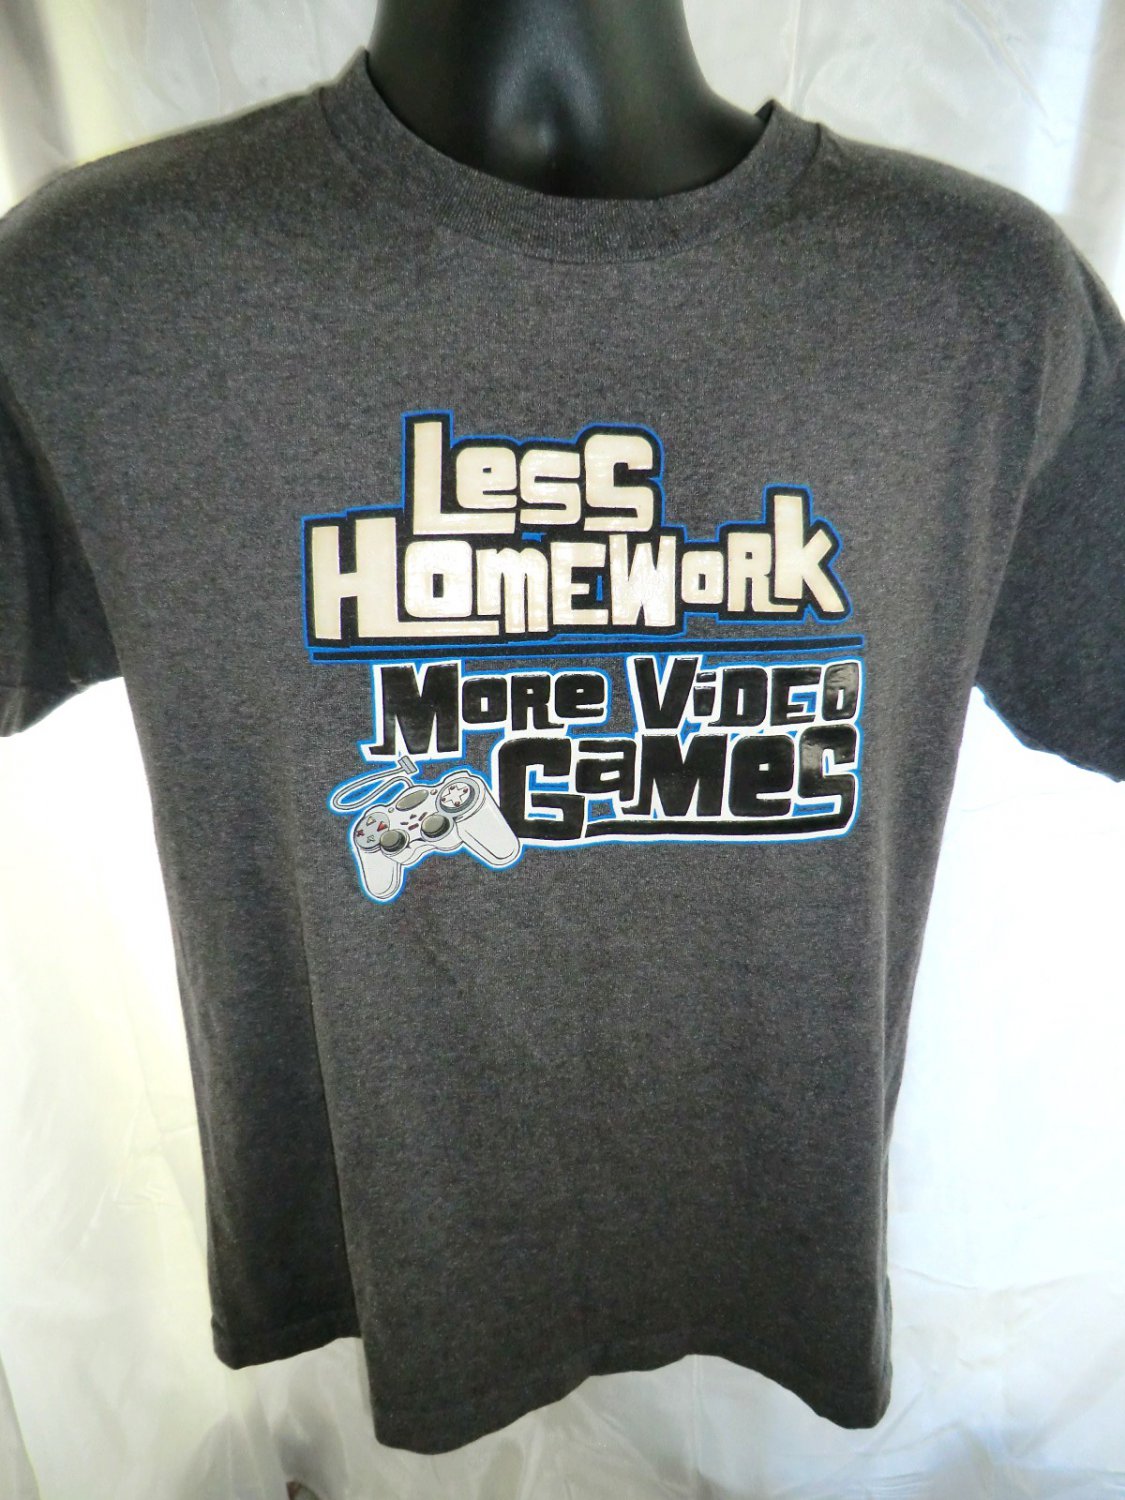 homework video games shirt